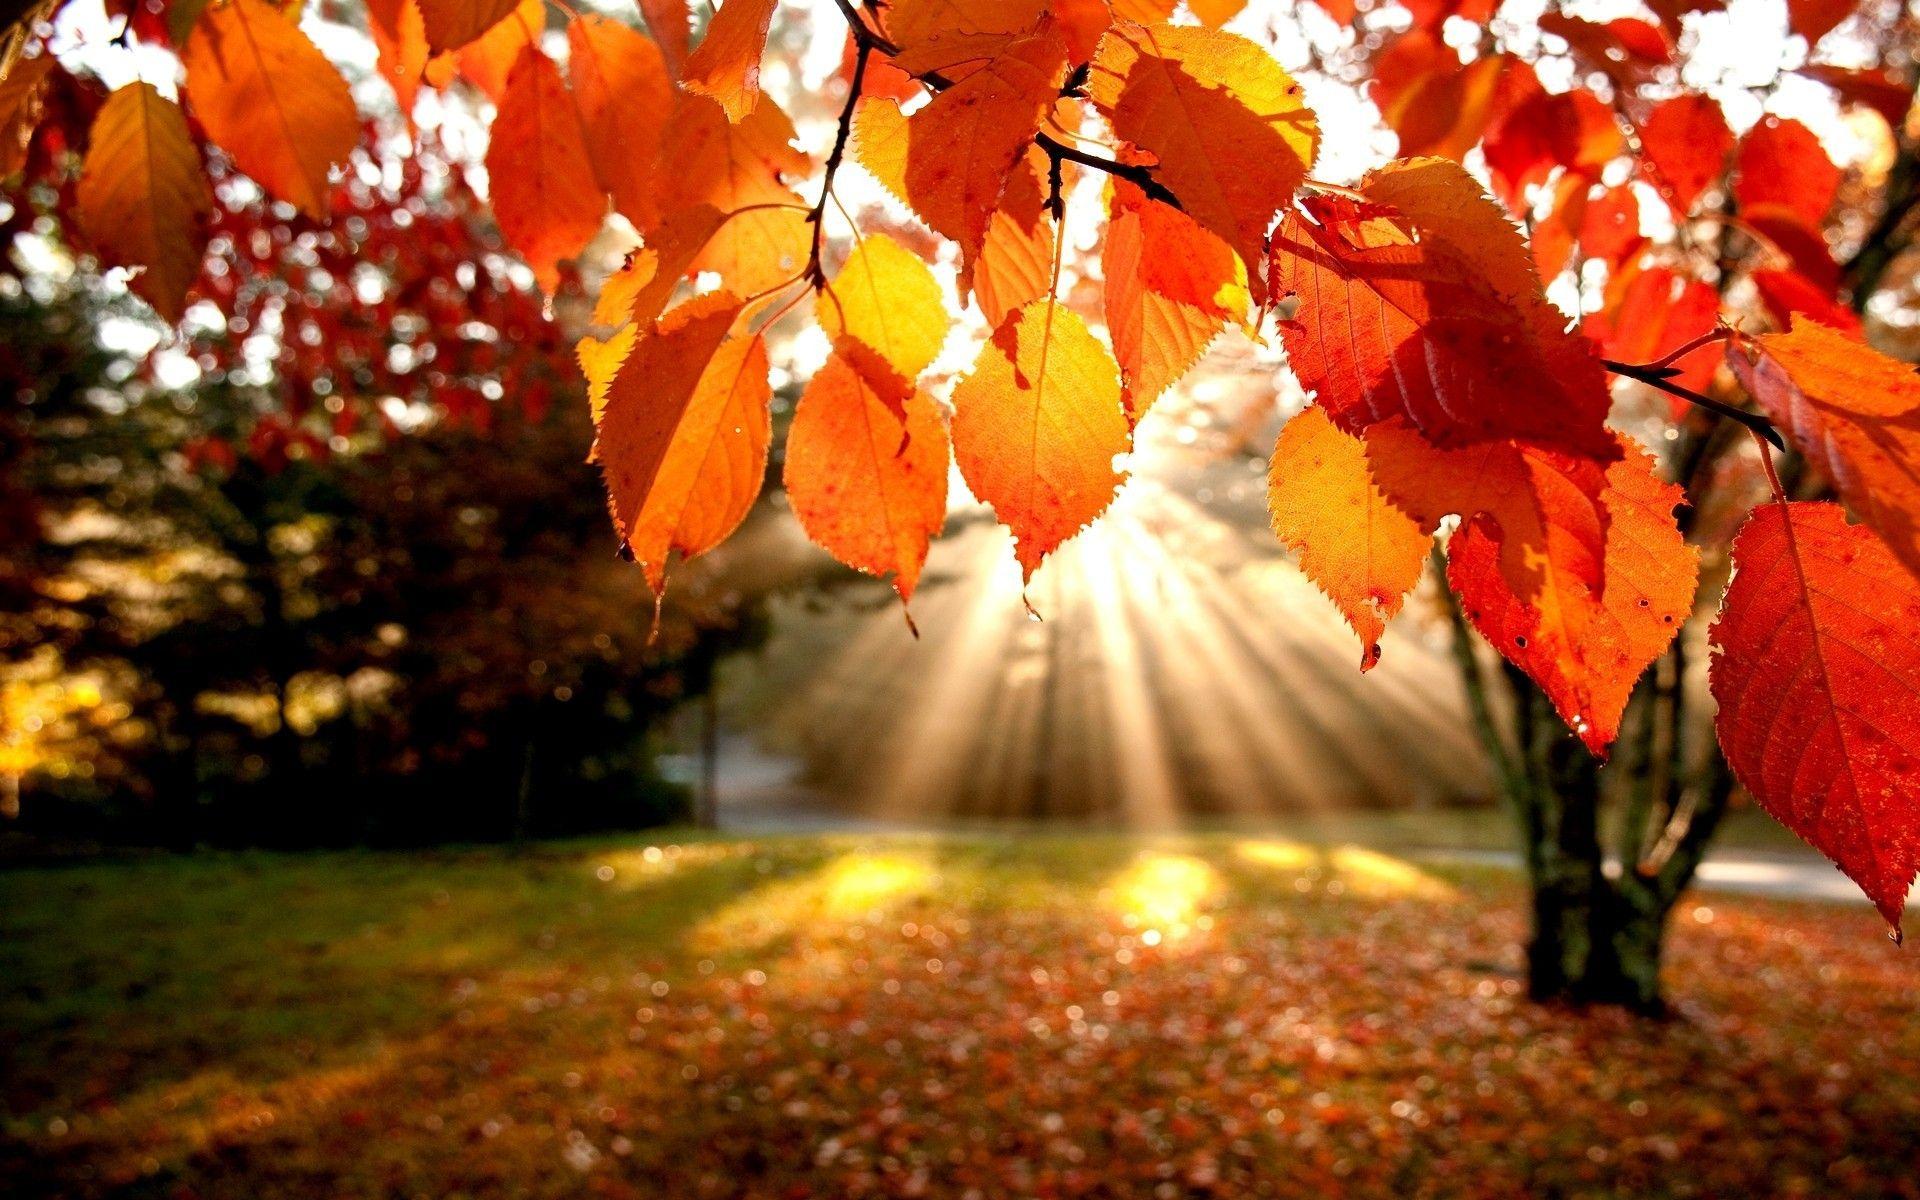 Fall foliage background